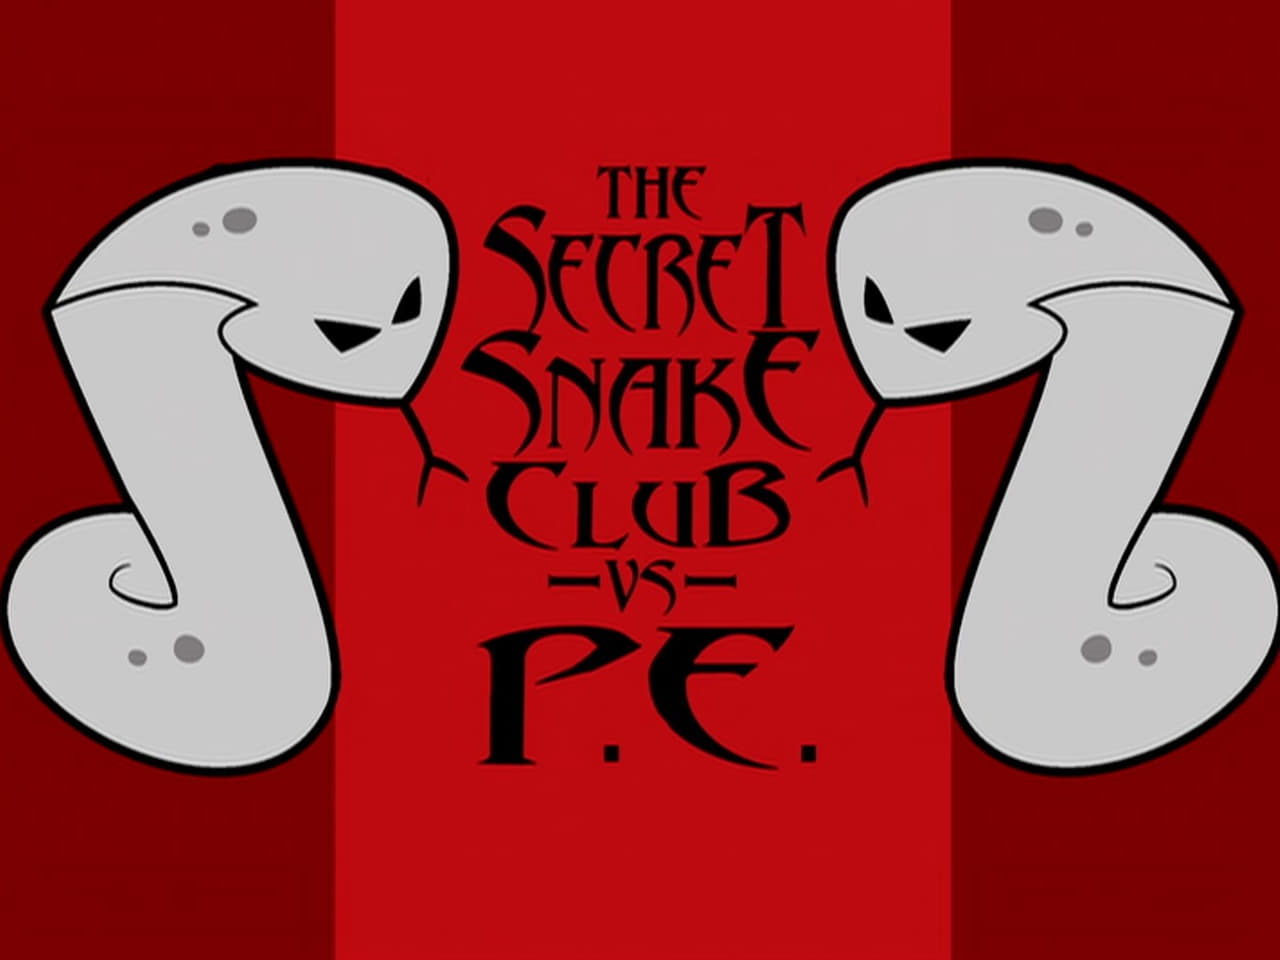 The Secret Snake Club vs PE